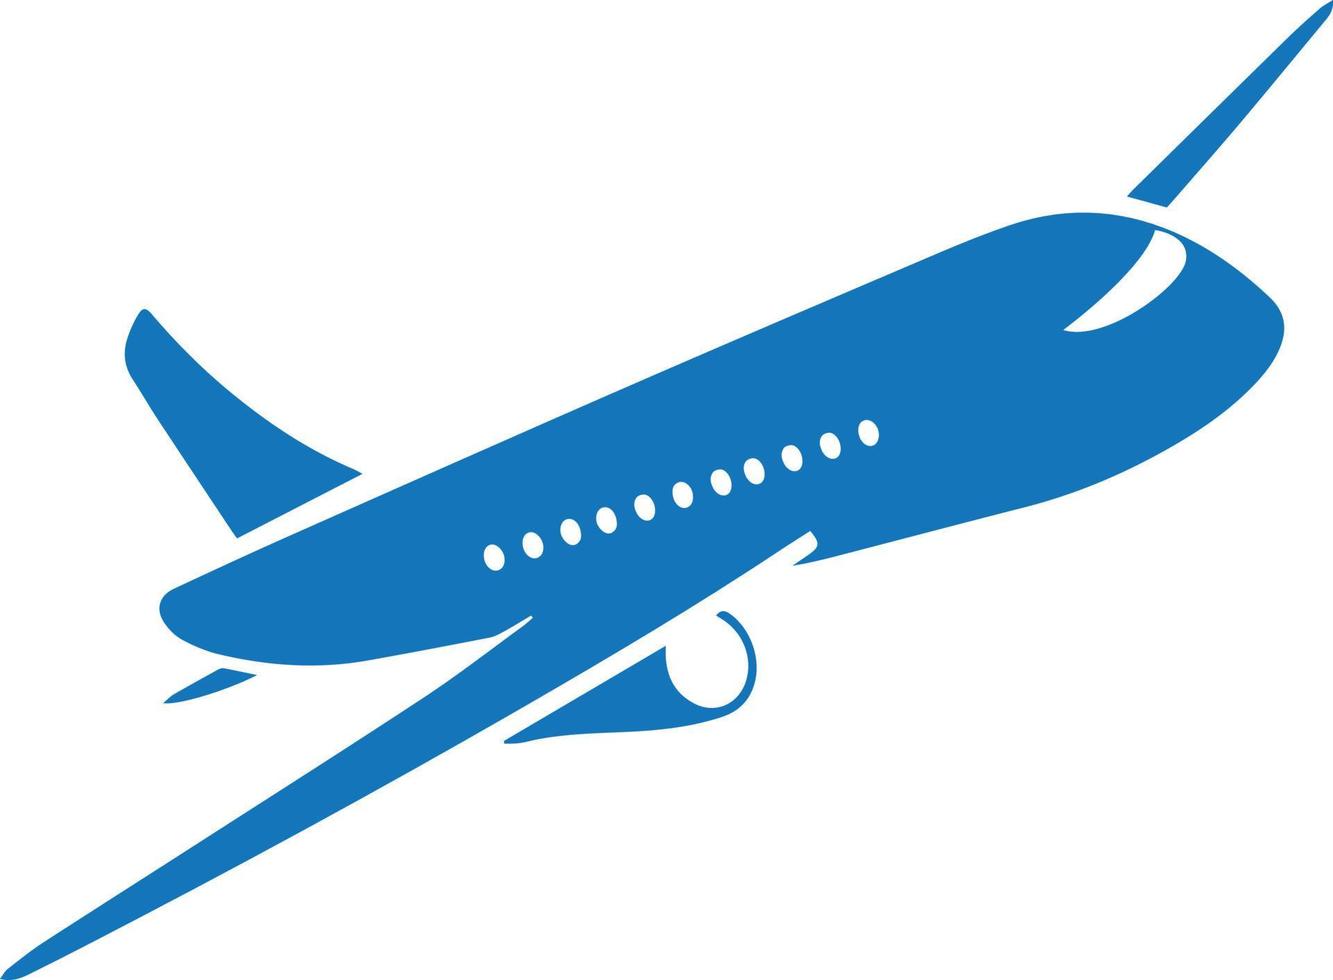 logo d'avion illustration vectorielle conception de silhouette d'avion vecteur